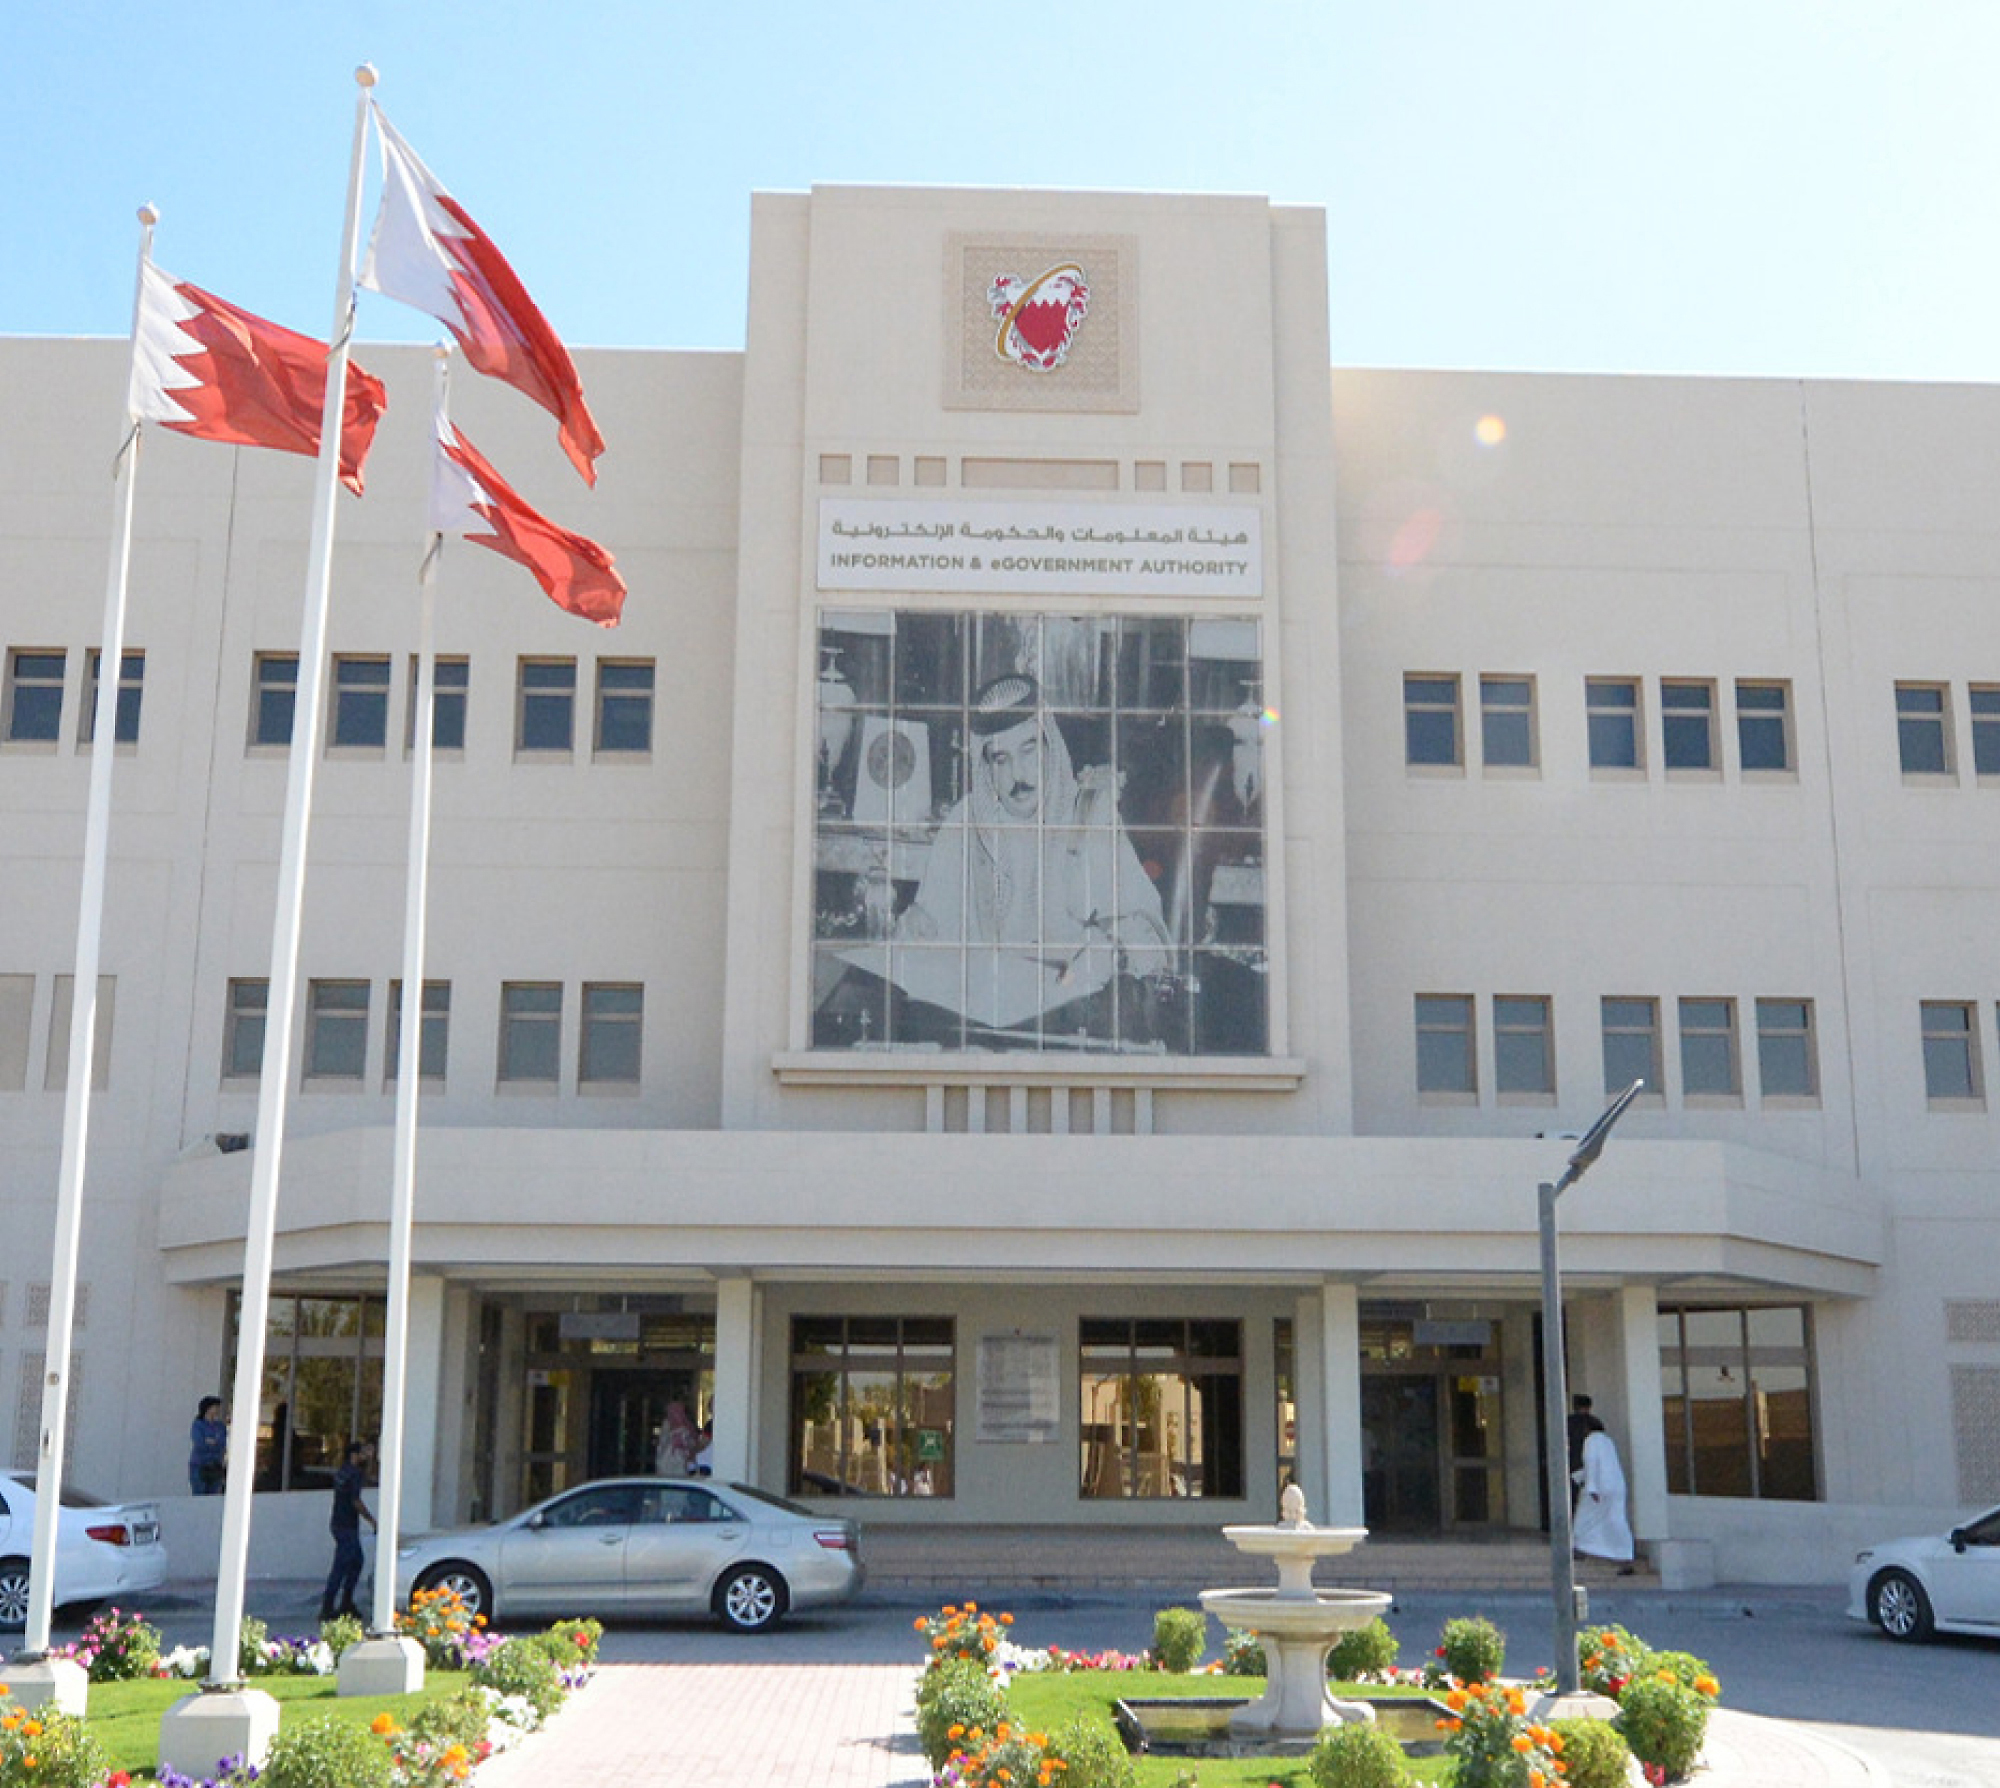 Bahreyn'de ulusal bayrağın görüntülendiği bilgi ve e-devlet yetkilisi binasının önden görünümü